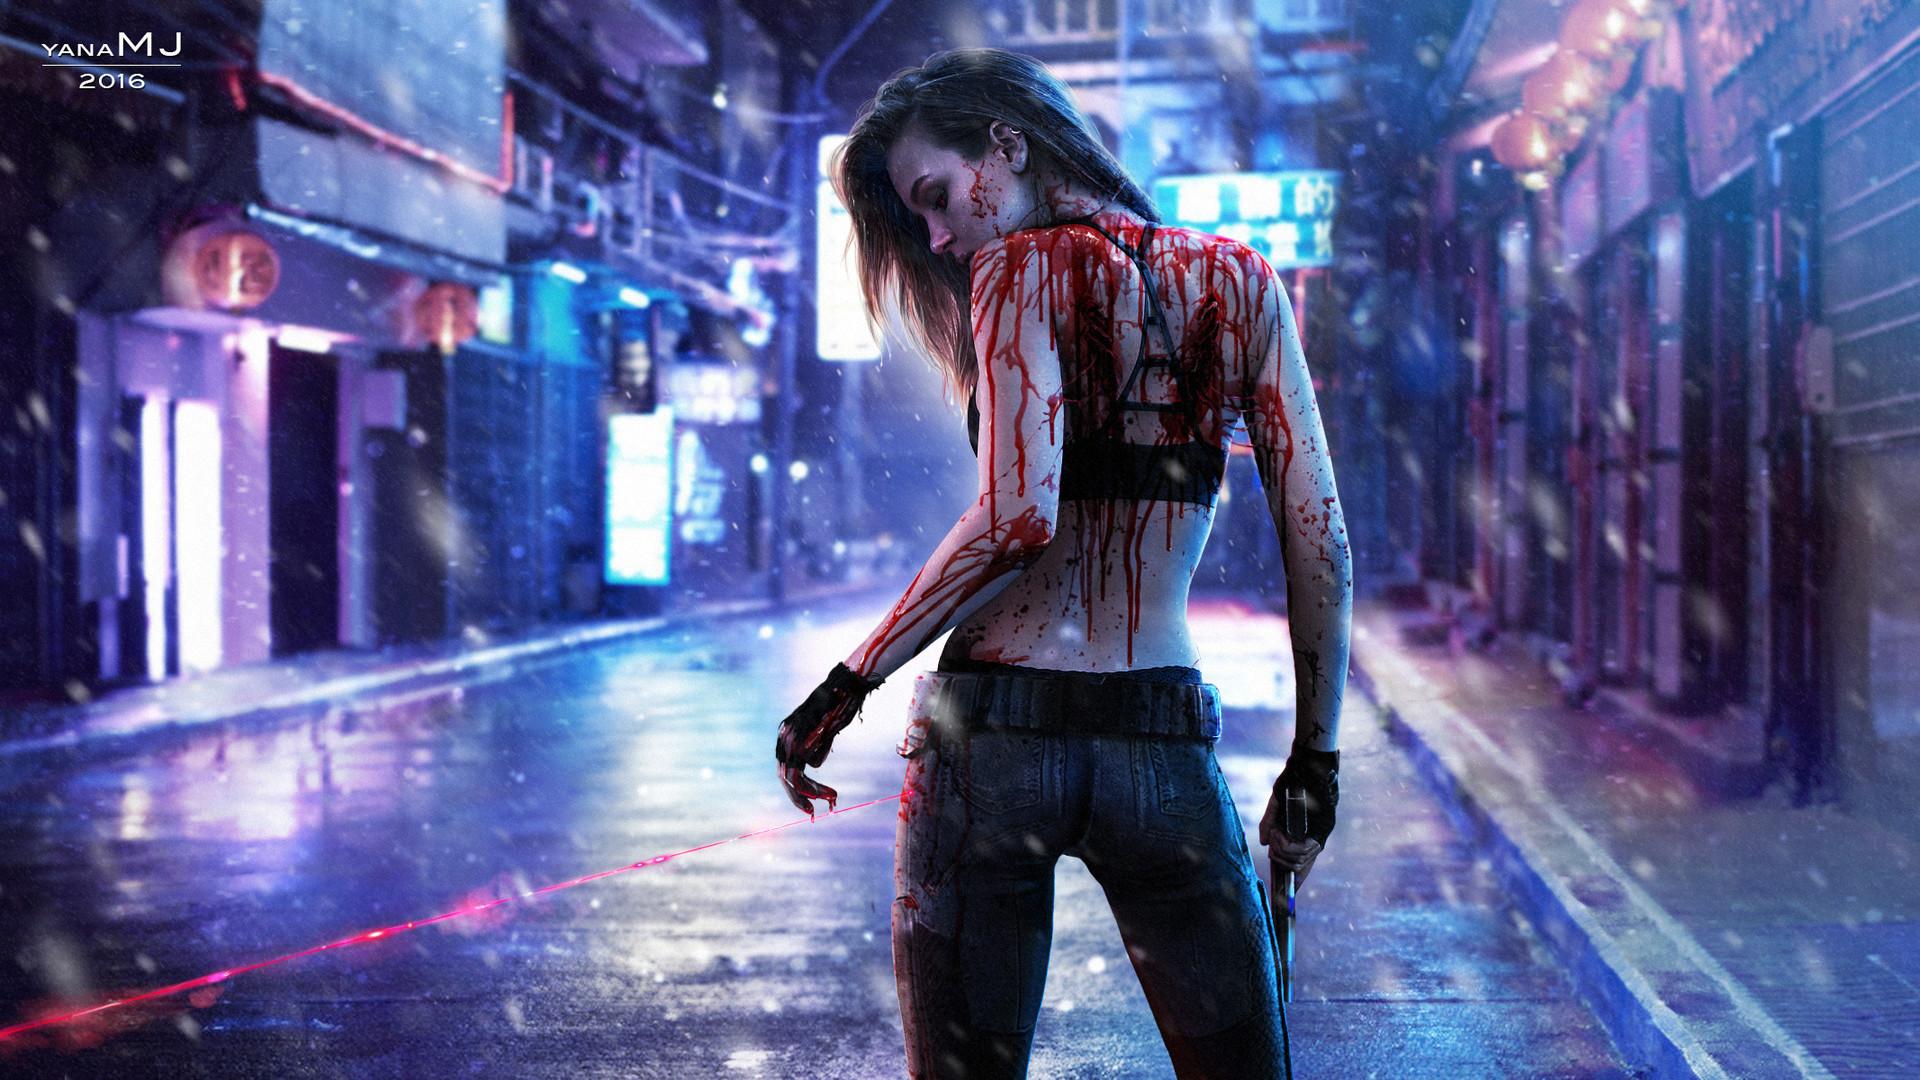 Wallpaper of Blood, Cyberpunk, Girl, Gun, Laser, Rain background